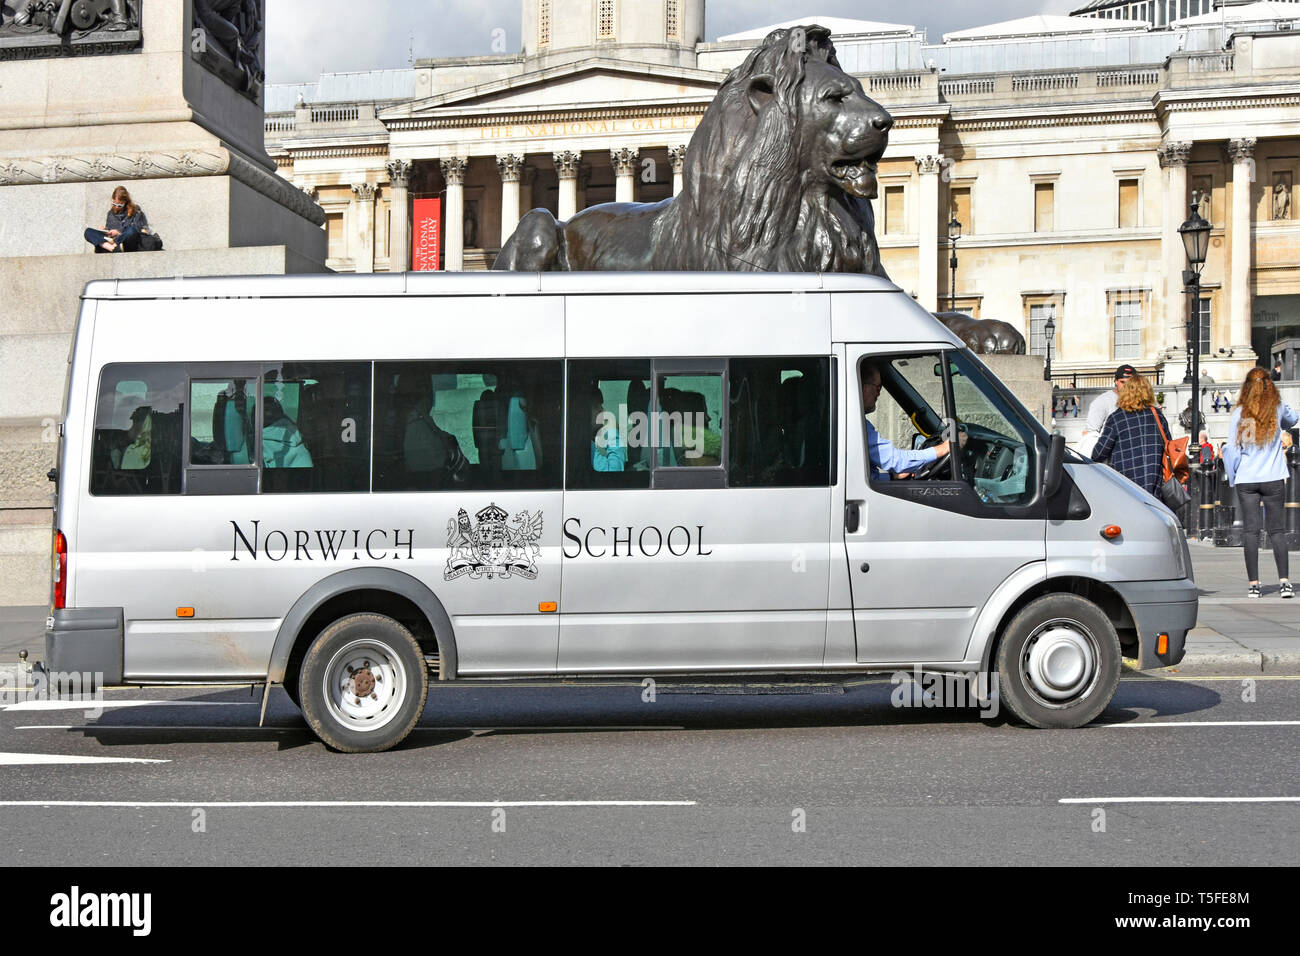 Côté scène de rue des fonds privés indépendants de la Norwich School mini bus & driver sur voyage à Londres statue de Lion passé conduite à Trafalgar Square England UK Banque D'Images